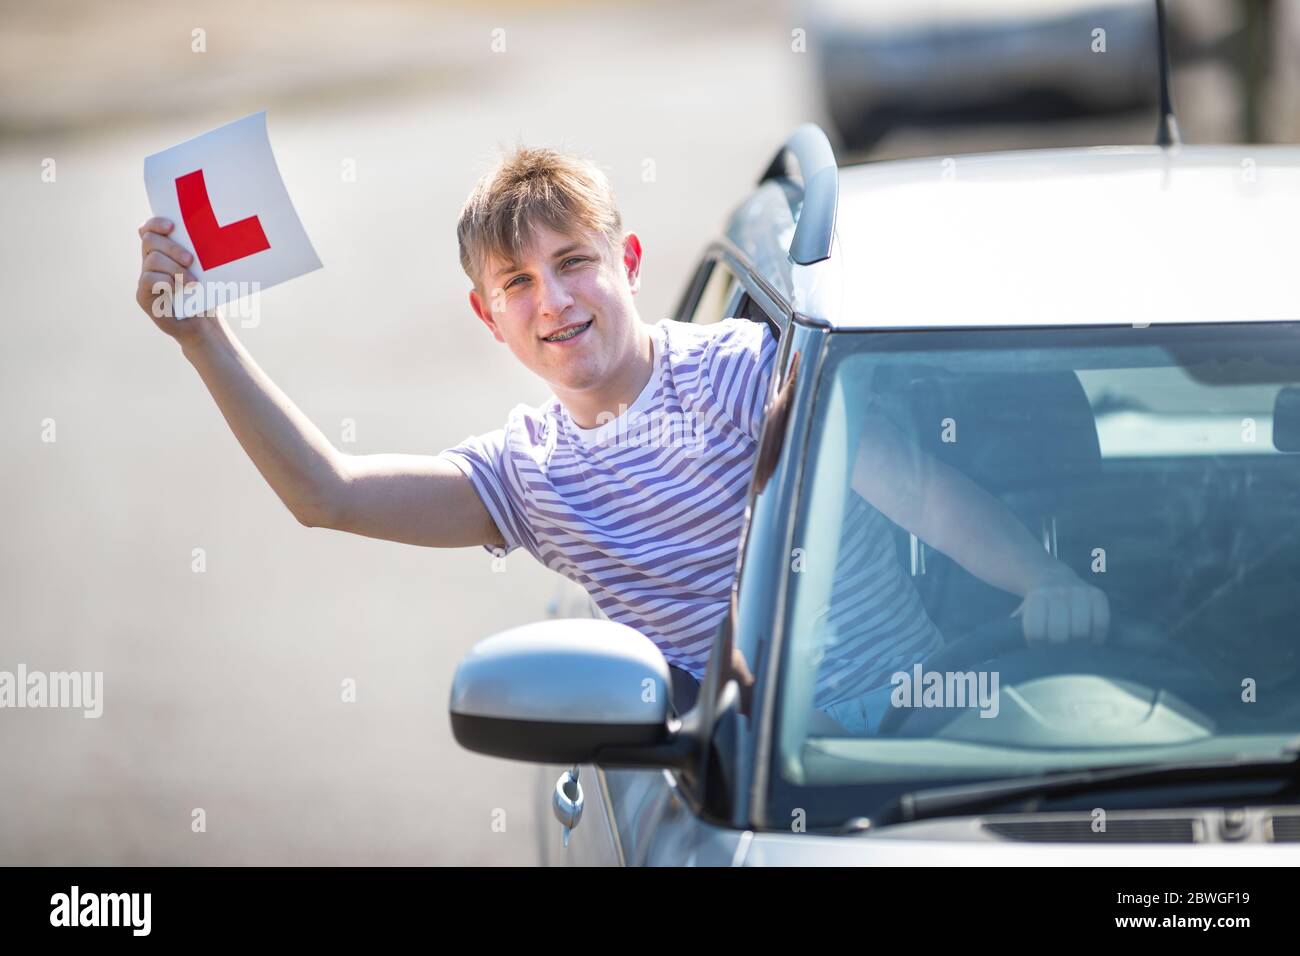 L'allievo teenager driver festeggia il superamento del test di guida sventolando i suoi piatti a L in aria. Foto Stock